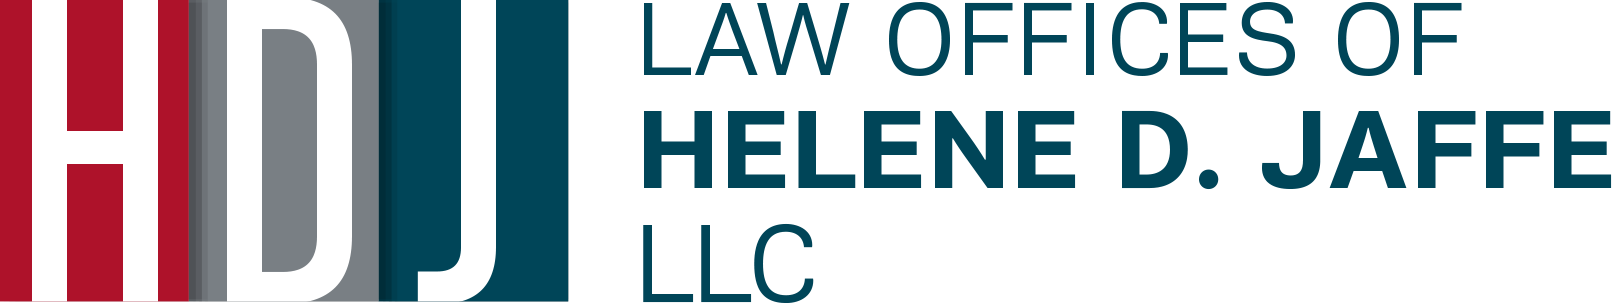 Law Offices of Helene D. Jaffe LLC